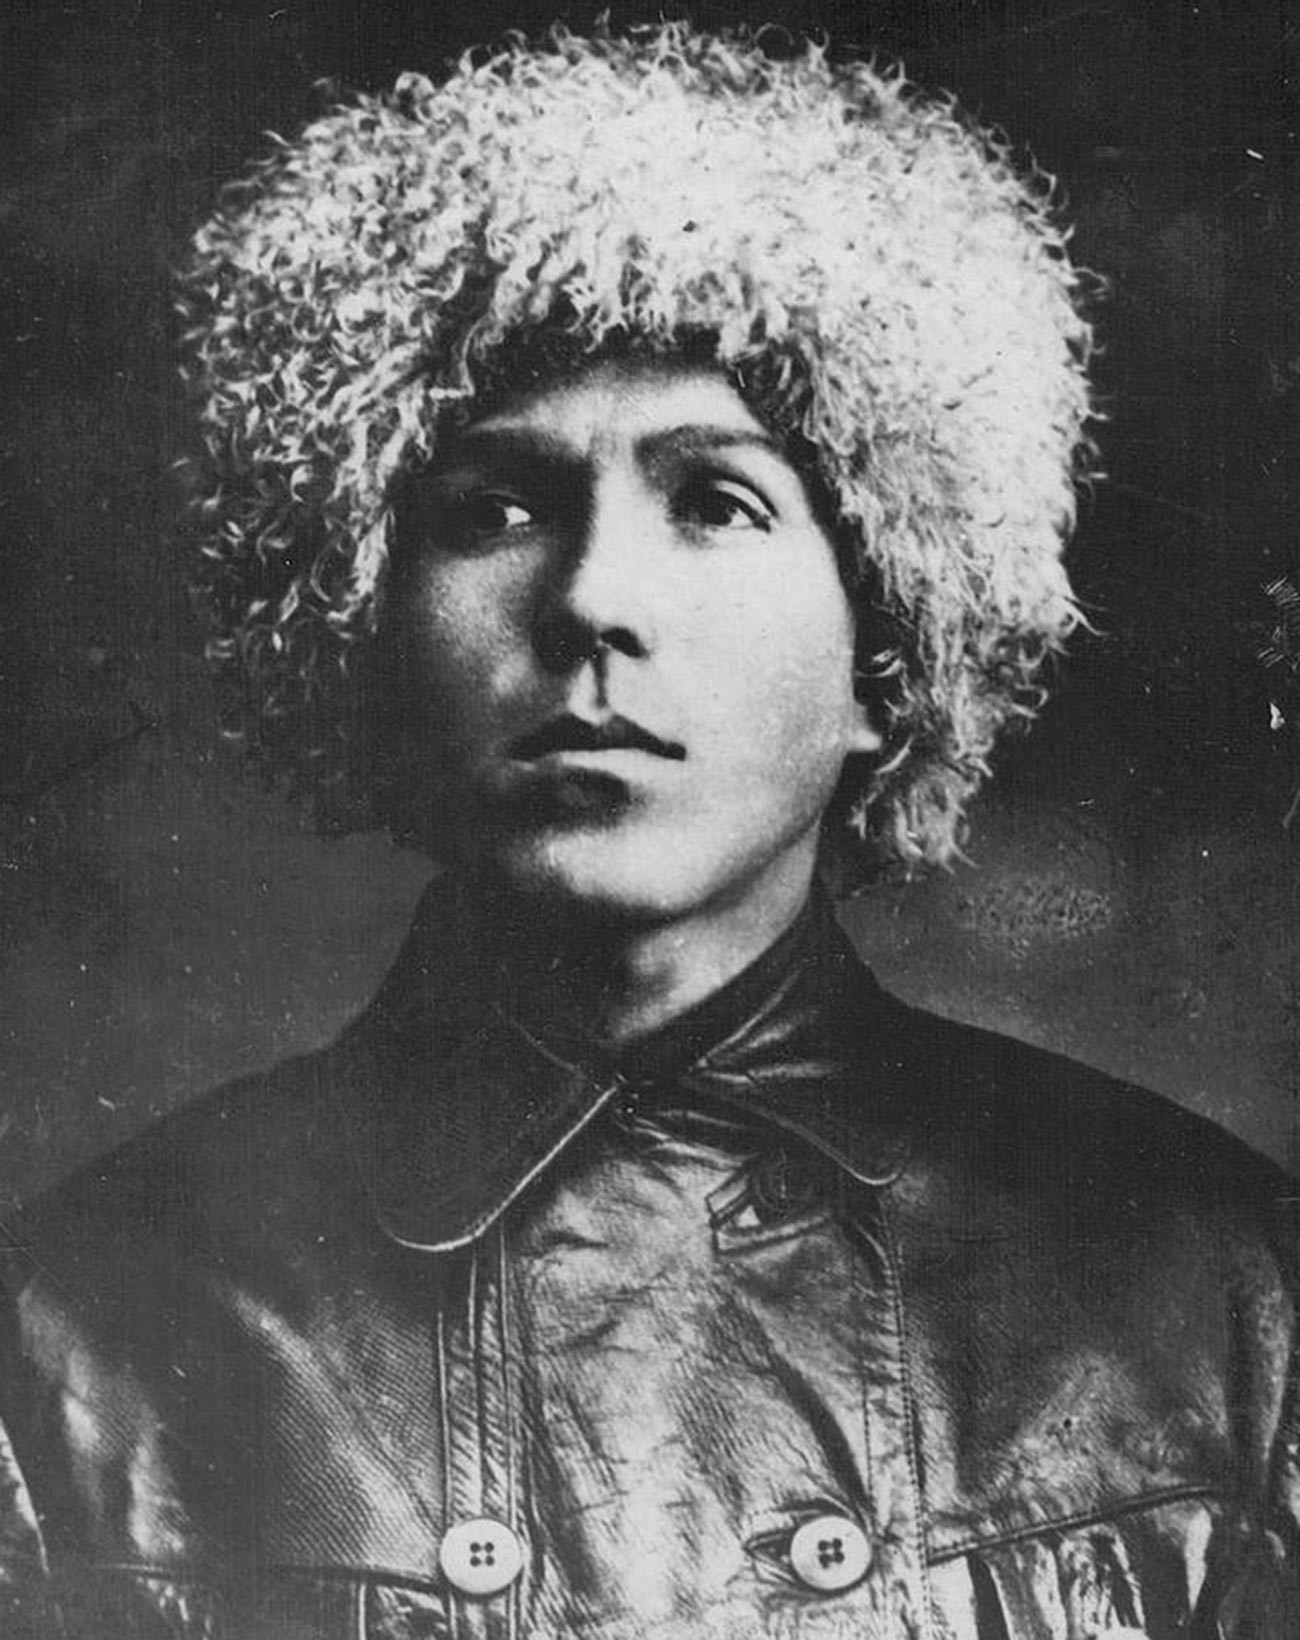 Foto von Nikolai Kuznetsow, aufgenommen 1930, bevor er zur Arbeit in Kudymkar aufbrach.